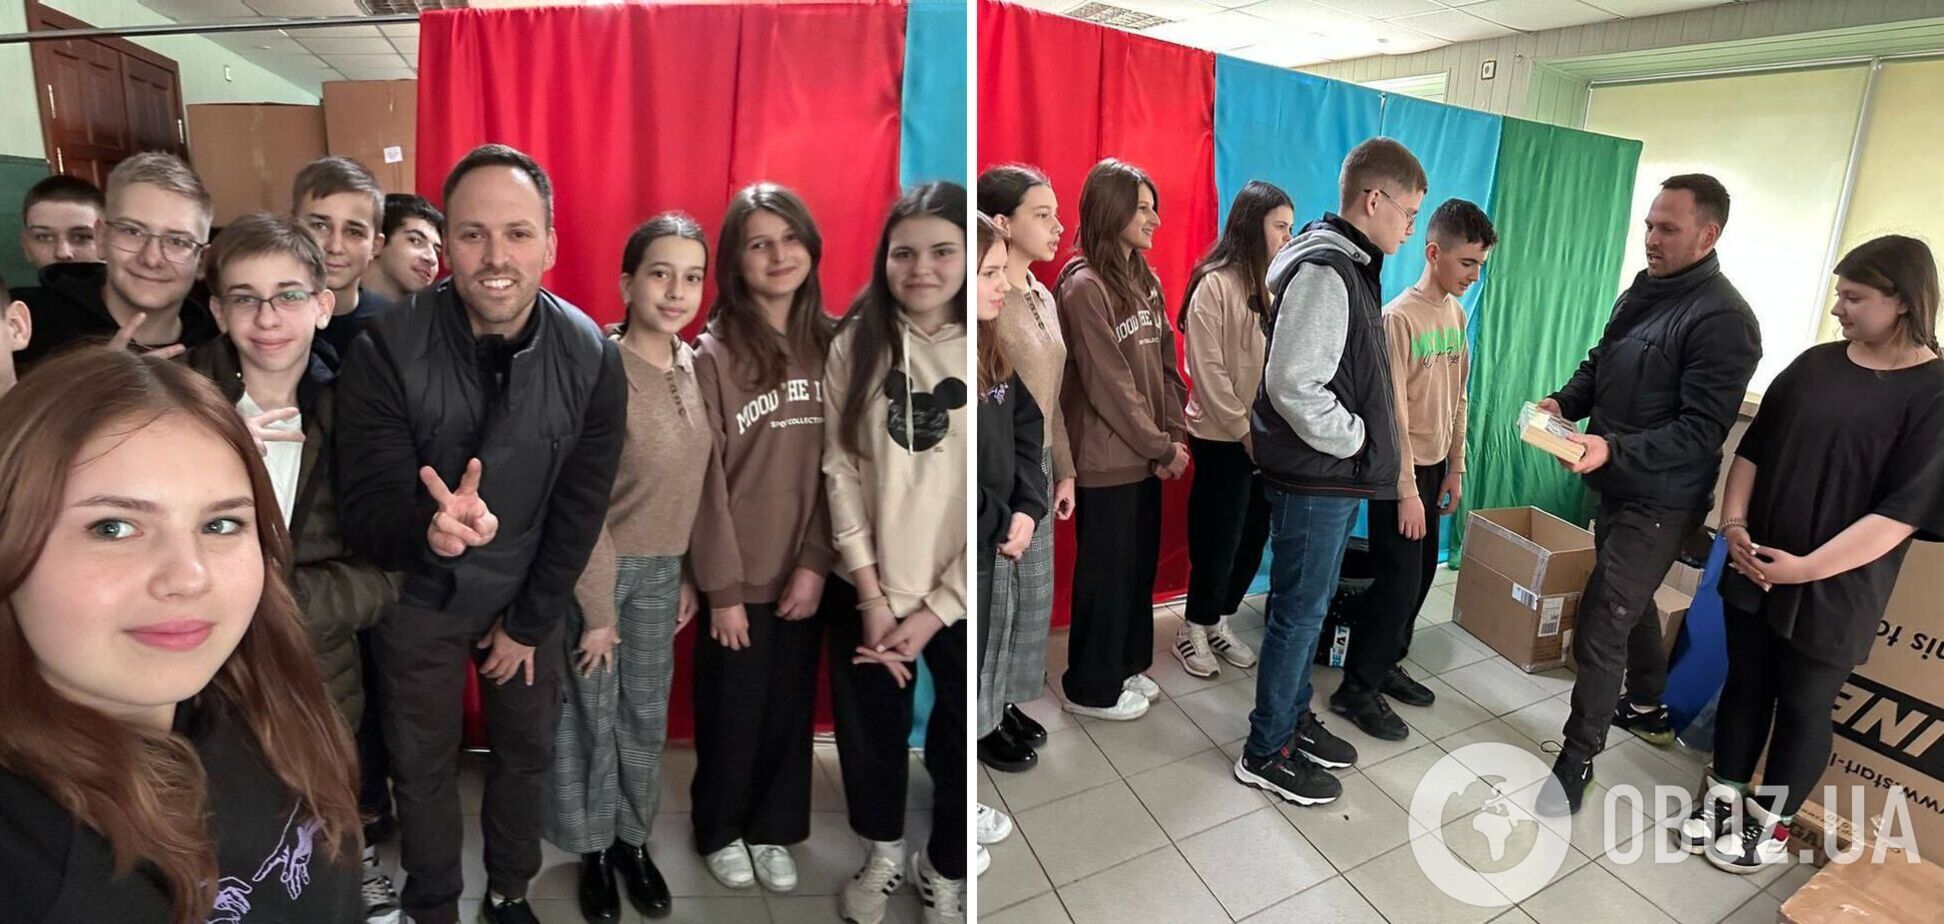 Зять Шойгу Столяров после критики 'спецоперации' решил реабилитироваться и привез в 'ДНР' гуманитарную помощь. Фото и видео